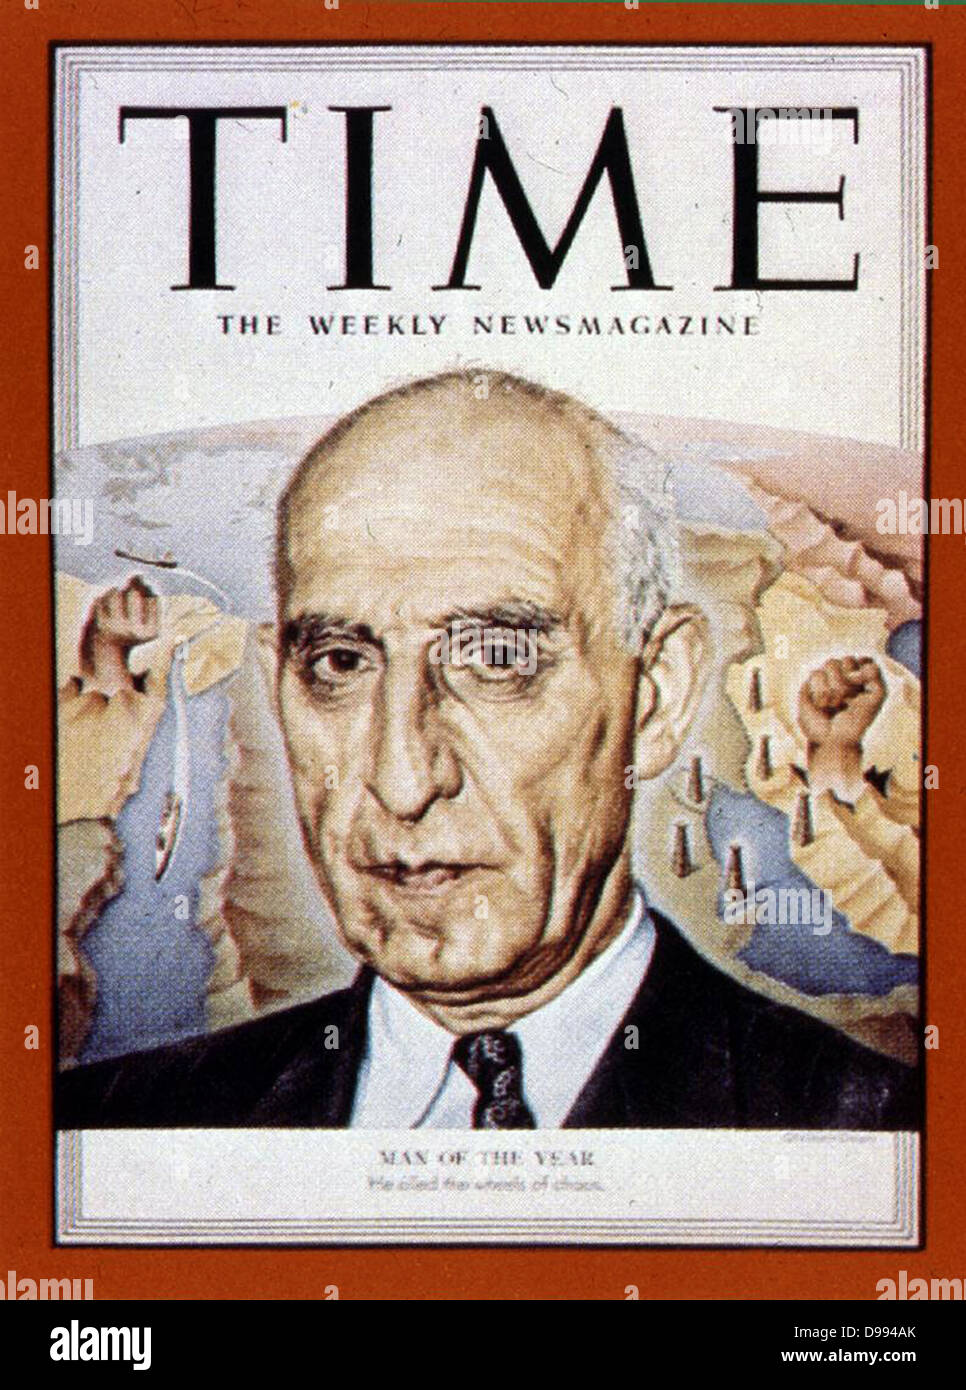 Mossadeq 1951 Uomo dell'anno, dal tempo 1952. Mohammad Mosaddegh (19 maggio 1882 - 5 Marzo 1967) Il primo ministro iraniano dal 1951 al 1953 quando egli era stato rovesciato in un colpo di stato appoggiato dagli Stati Uniti Central Intelligence Agency. Foto Stock